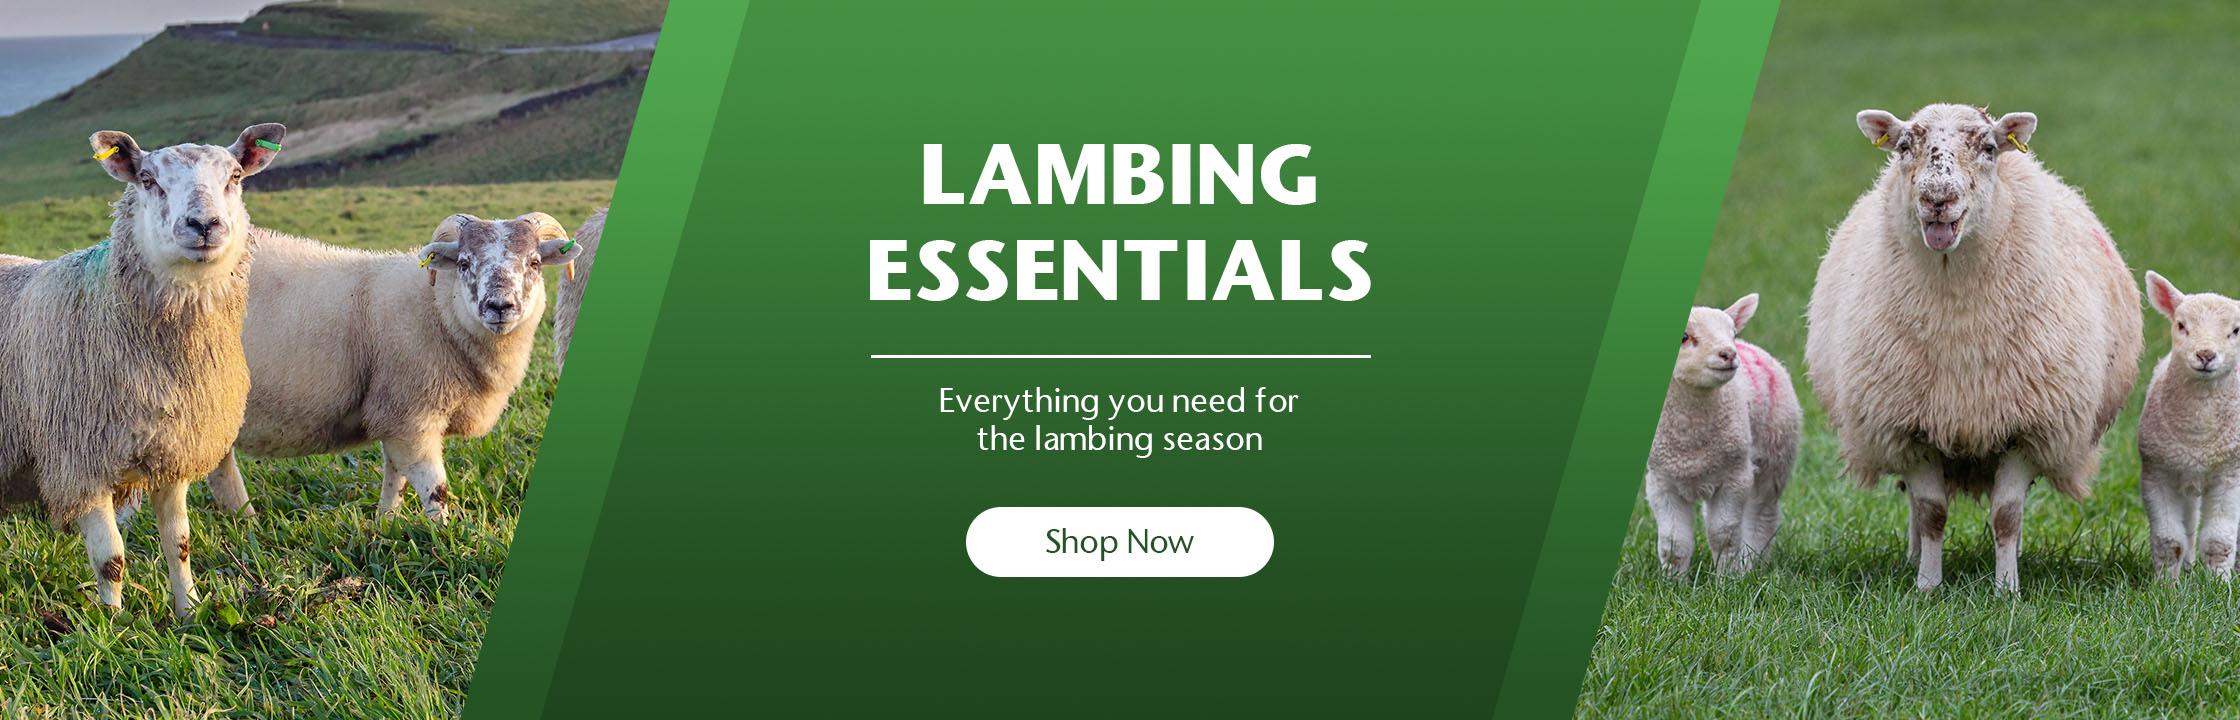 Lambing Essentials